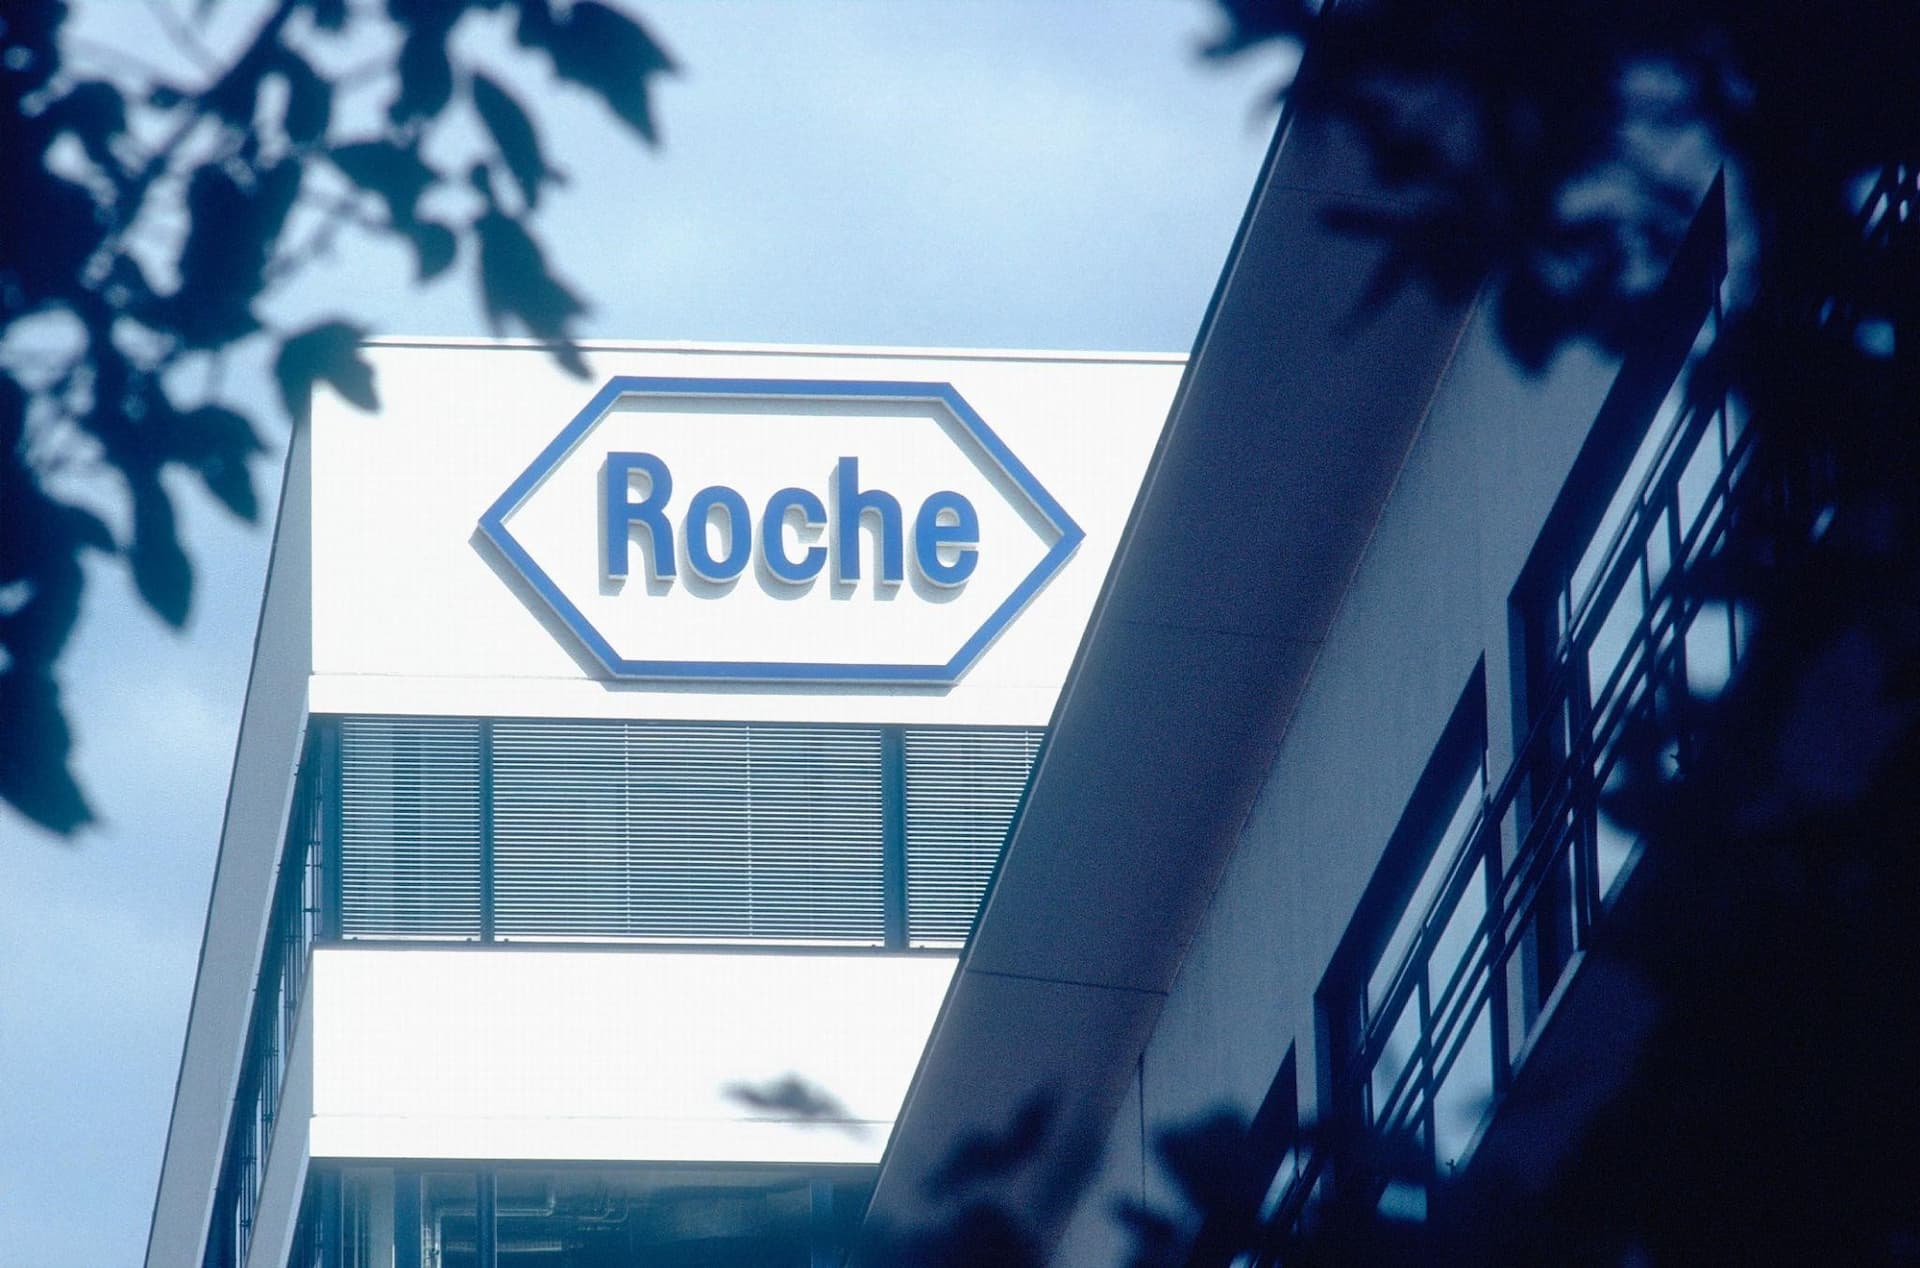 Cổ tức của Roche Holding được tăng thành 9,60 CHF